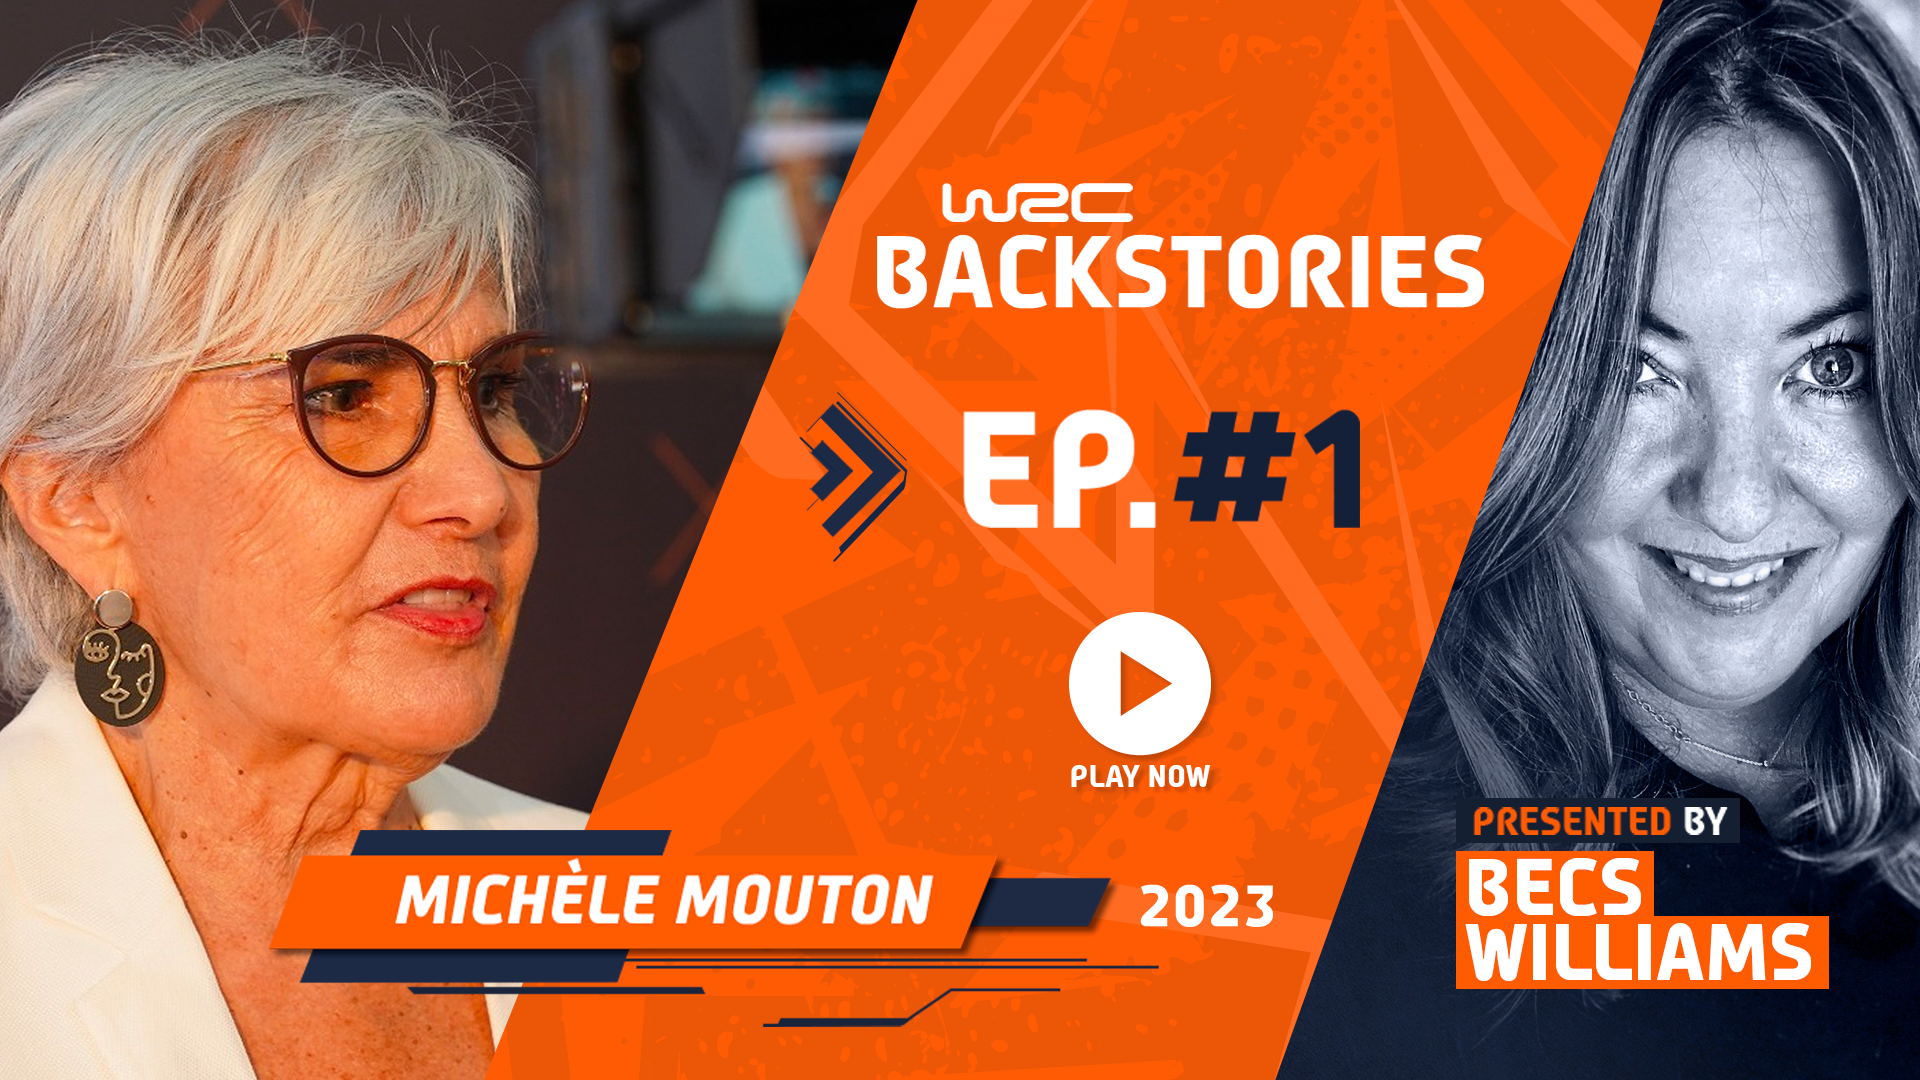 WRC Backstories: Michèle Mouton